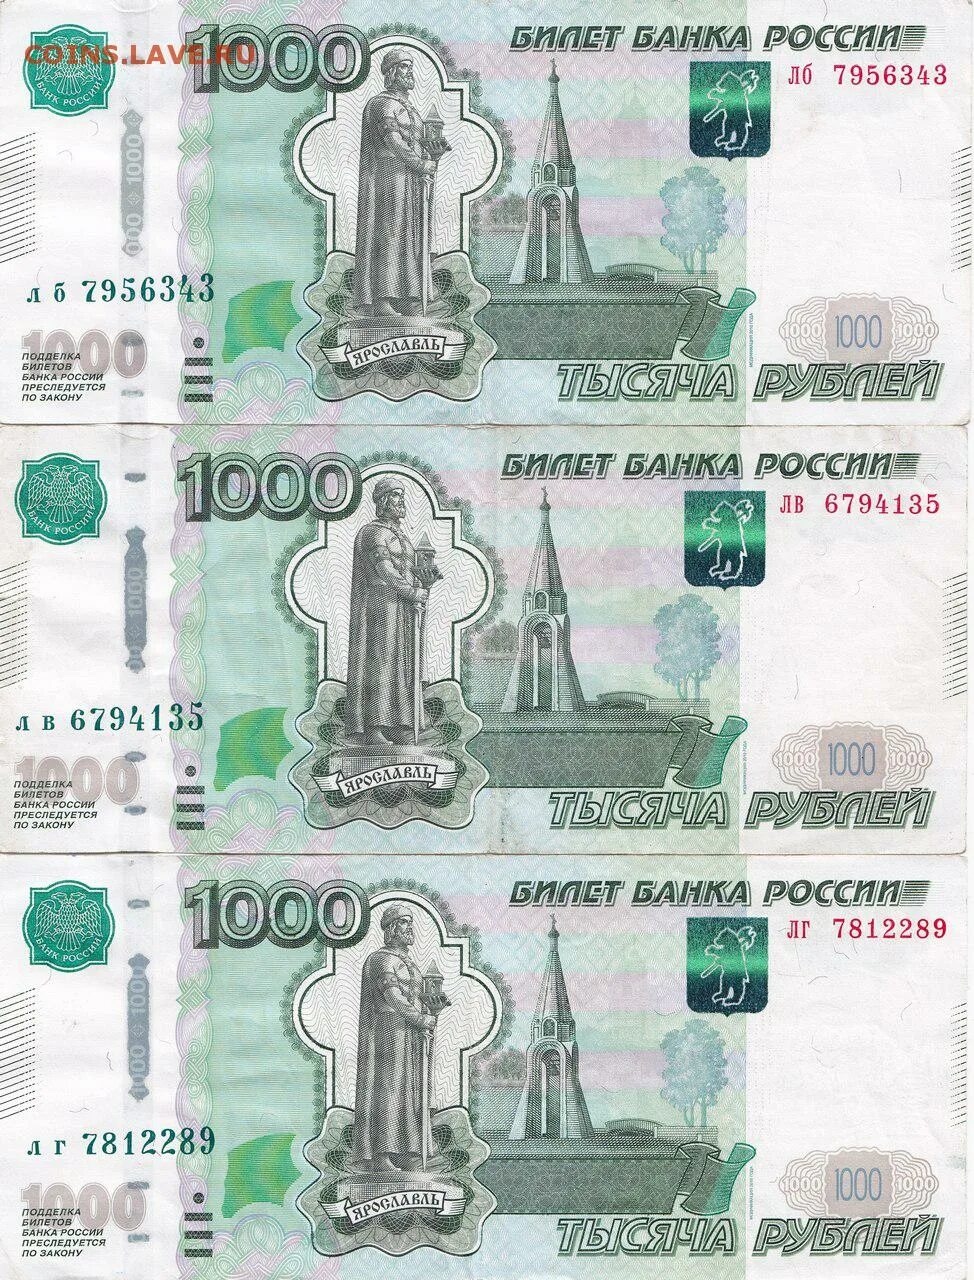 Тысяча рублей размер. 1000 Рублей купюра для печати. Распечатка 1000 рублей. 1000 Рублей купюра для печати на принтере. Банкнота 1000 рублей для печати.